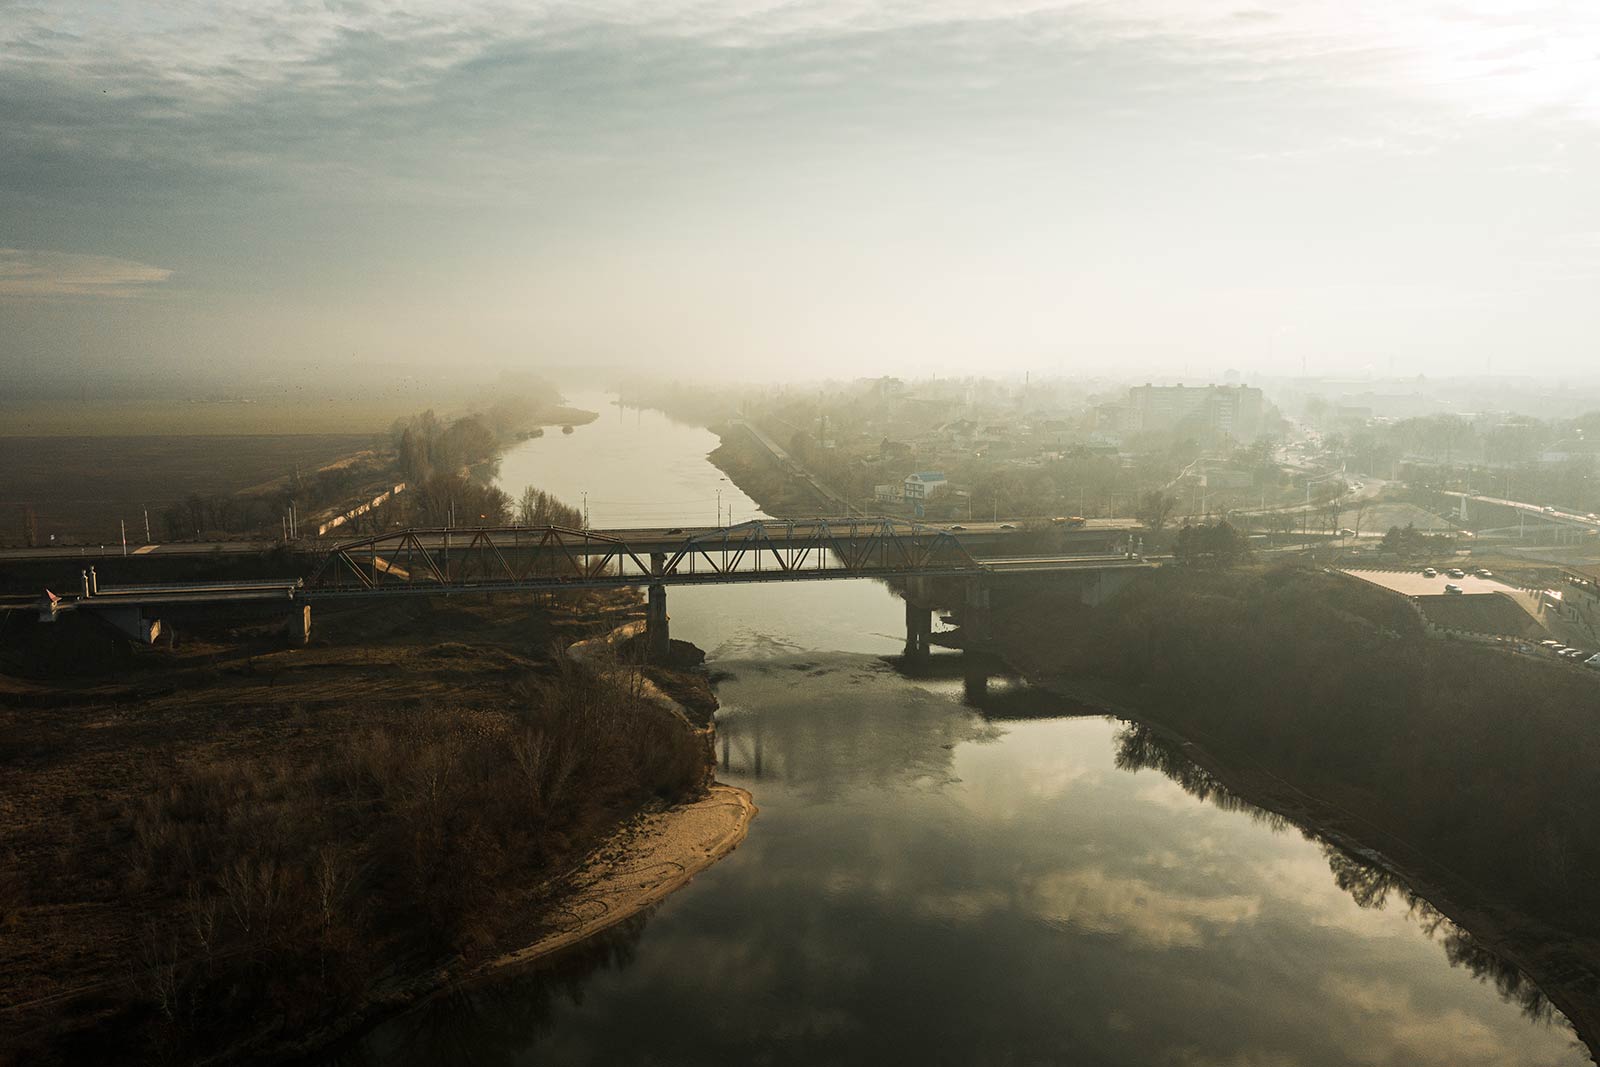 Bridge over the Dniester River in Tiraspol, Transnistria. A day in Transnistria